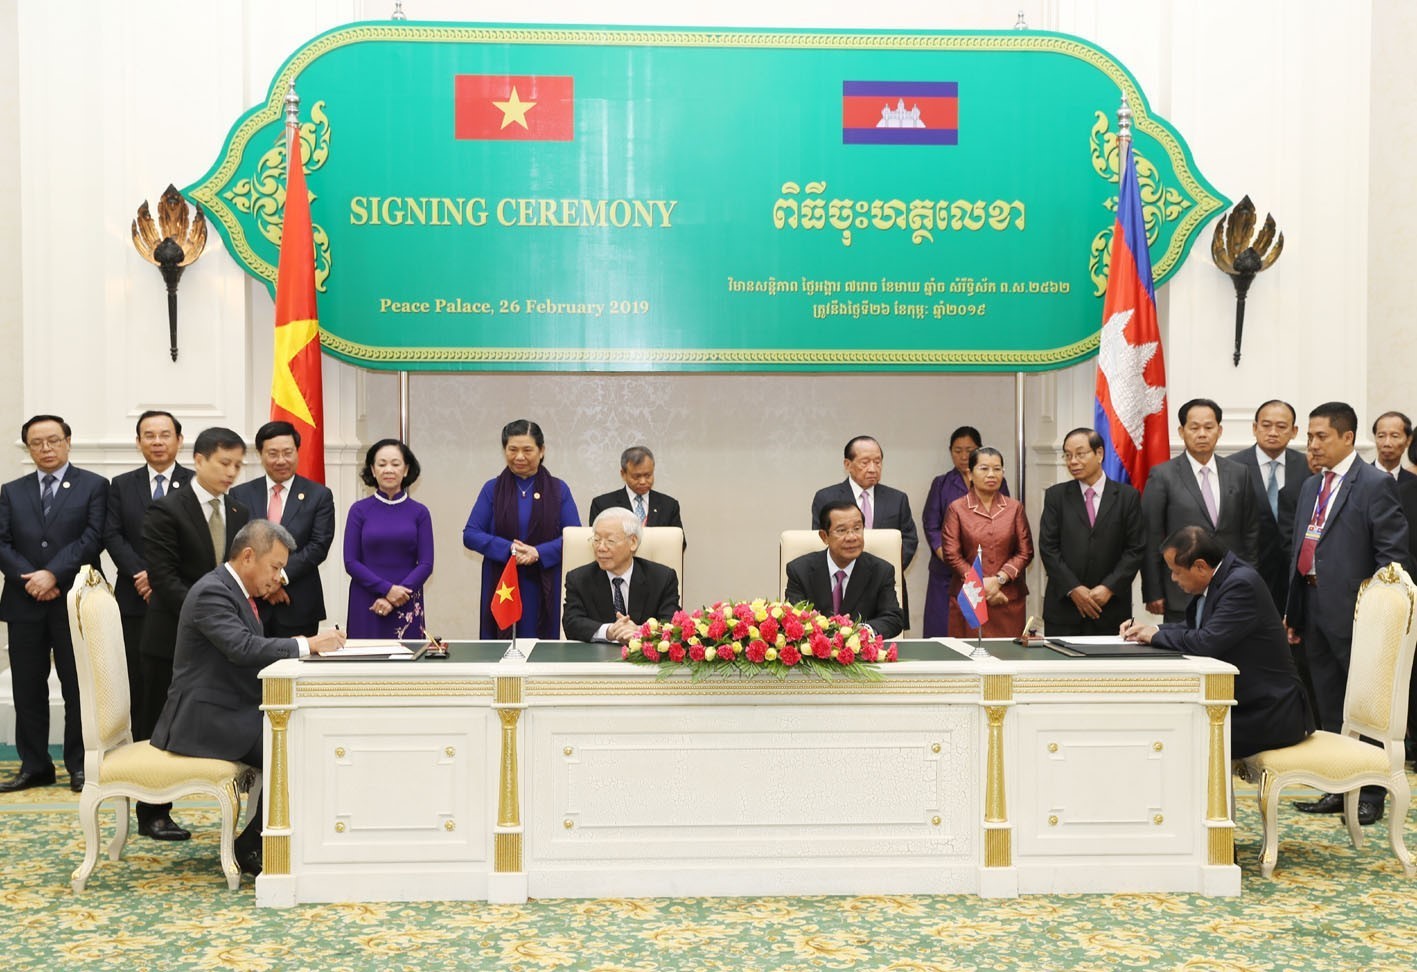 Lễ ký kết hợp tác giữa Vietnam Airlines và Bộ Du lịch Campuchia diễn ra dưới sự chứng kiến của Tổng Bí thư - Chủ tịch nước Nguyễn Phú Trọng và Thủ tướng Campuchia Samdech Techo Hun Sen.